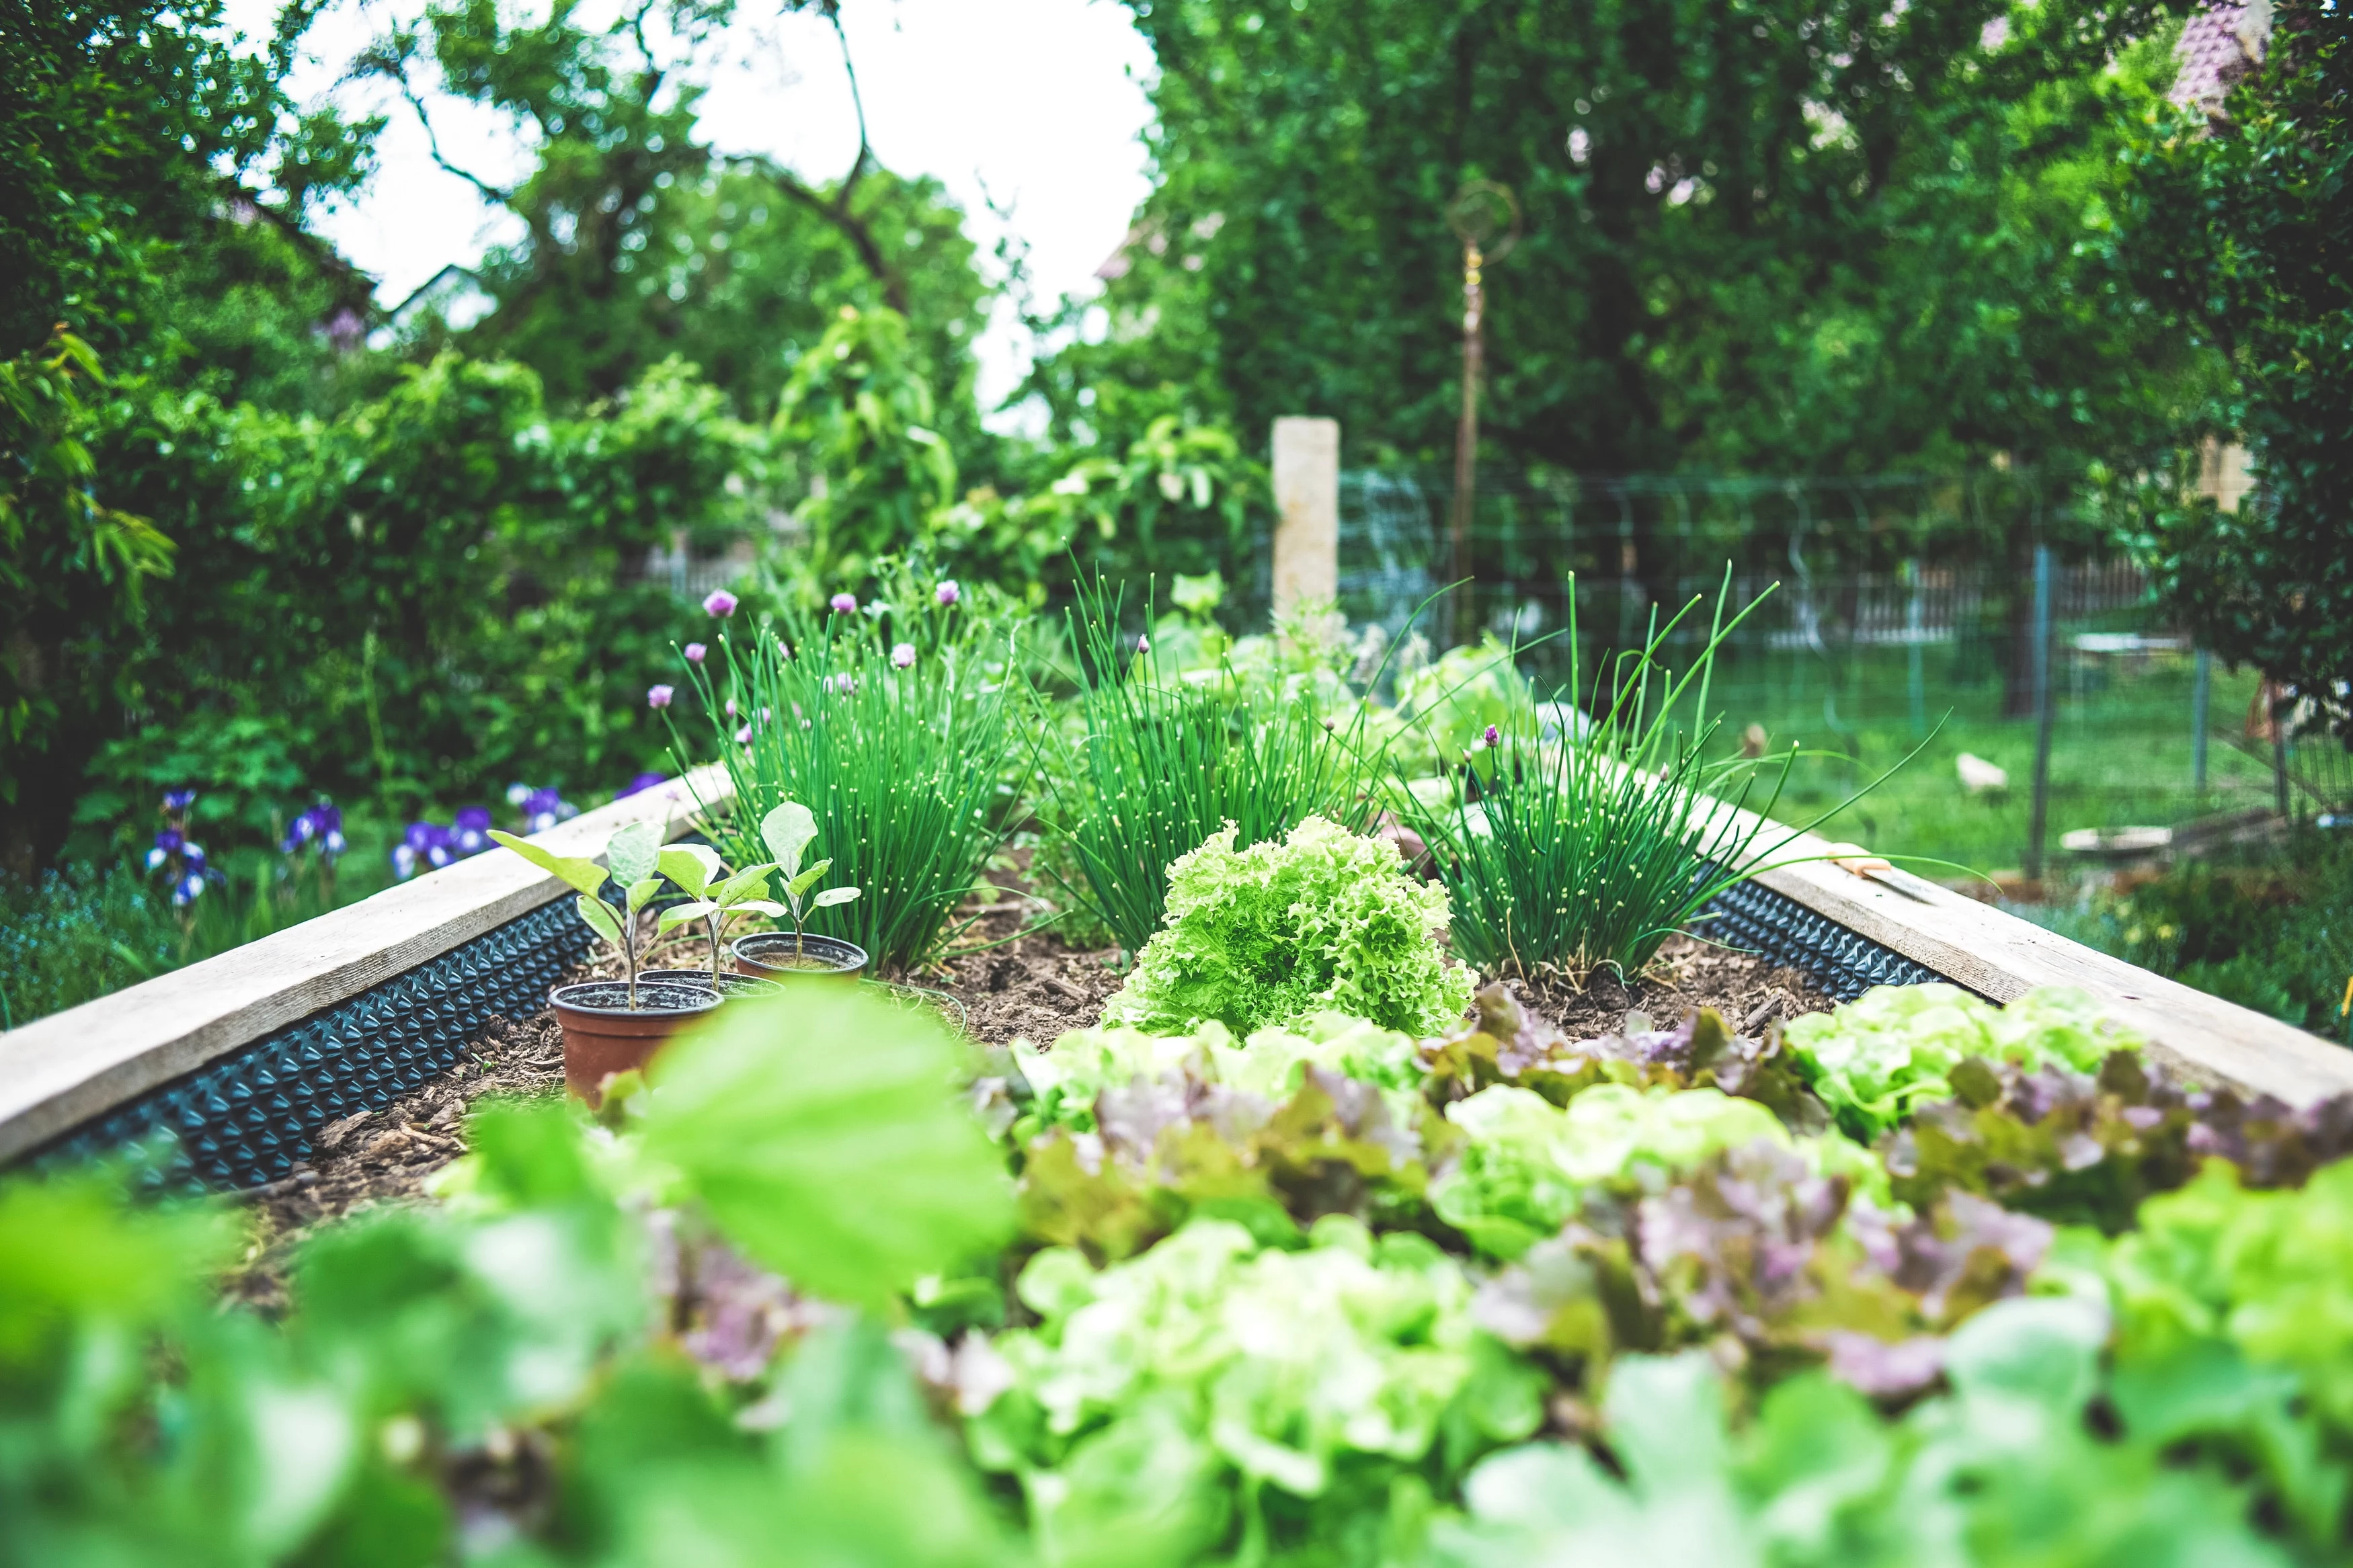 how to start a vegetable garden small vegeatble garden